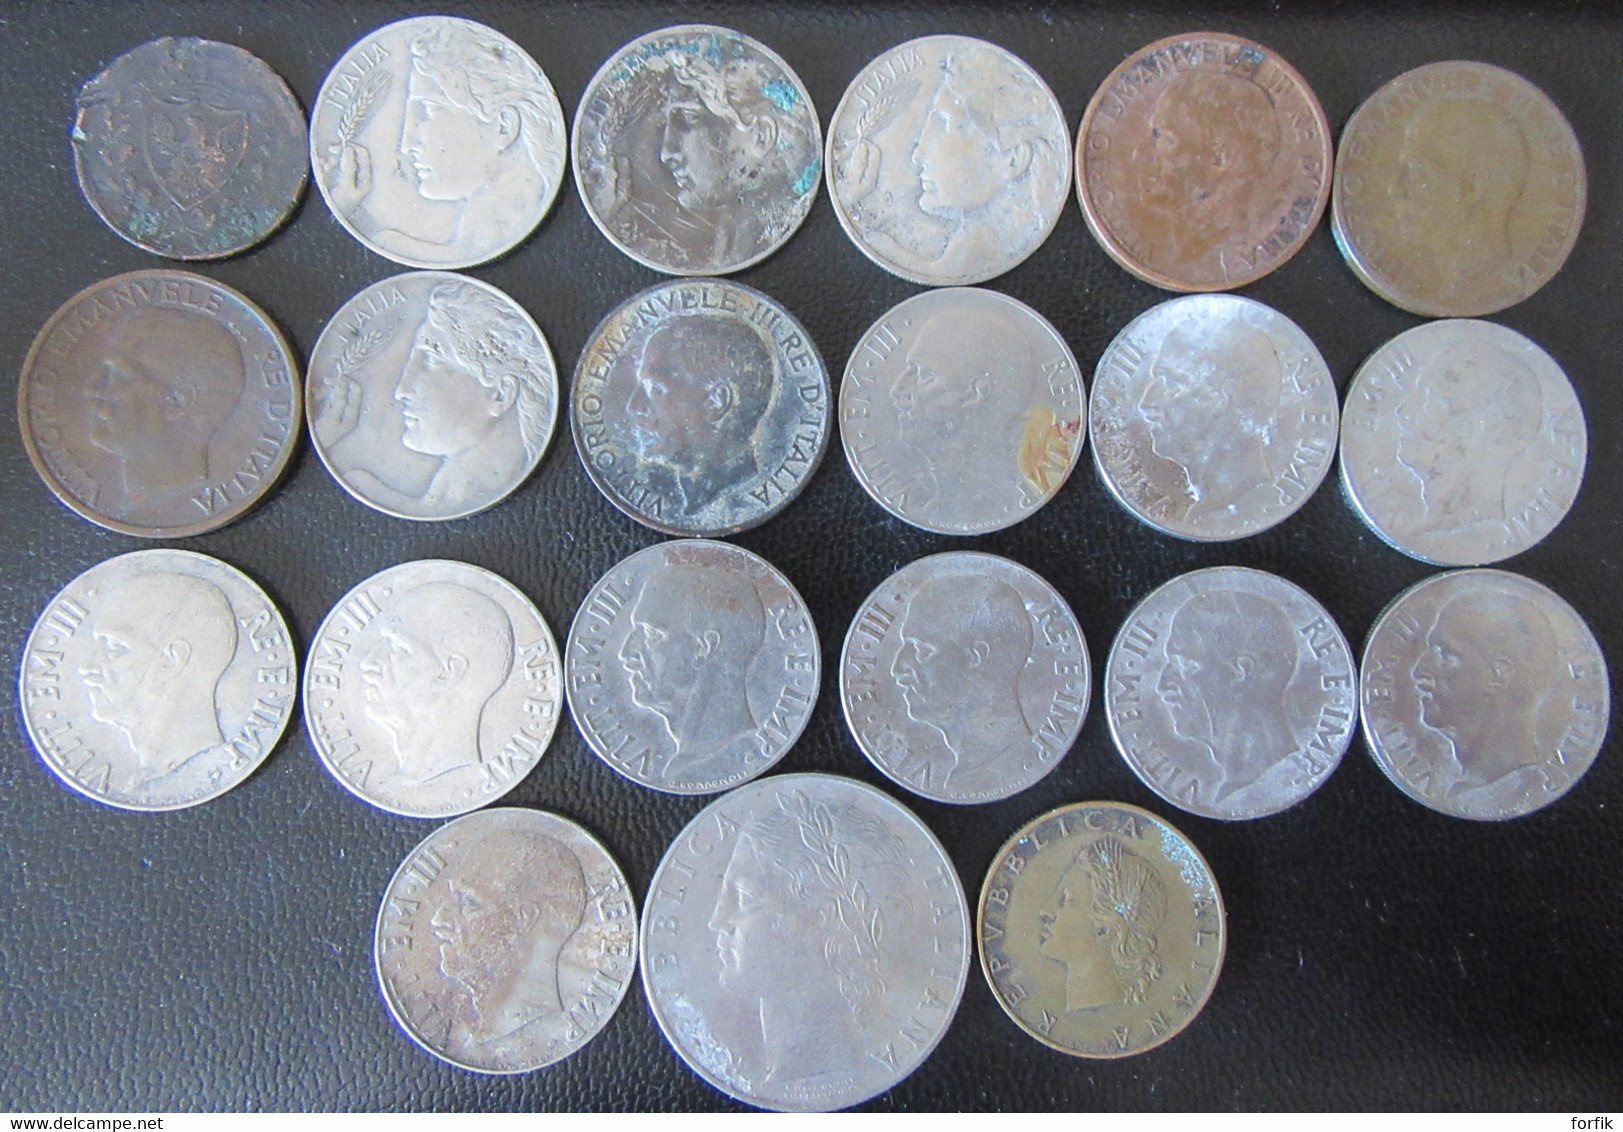 Italie / Italia - Lot De 21 Monnaies Entre 1826 Et 1958 Dont 1 Centesimo 1826 (état Moyen) - Colecciones